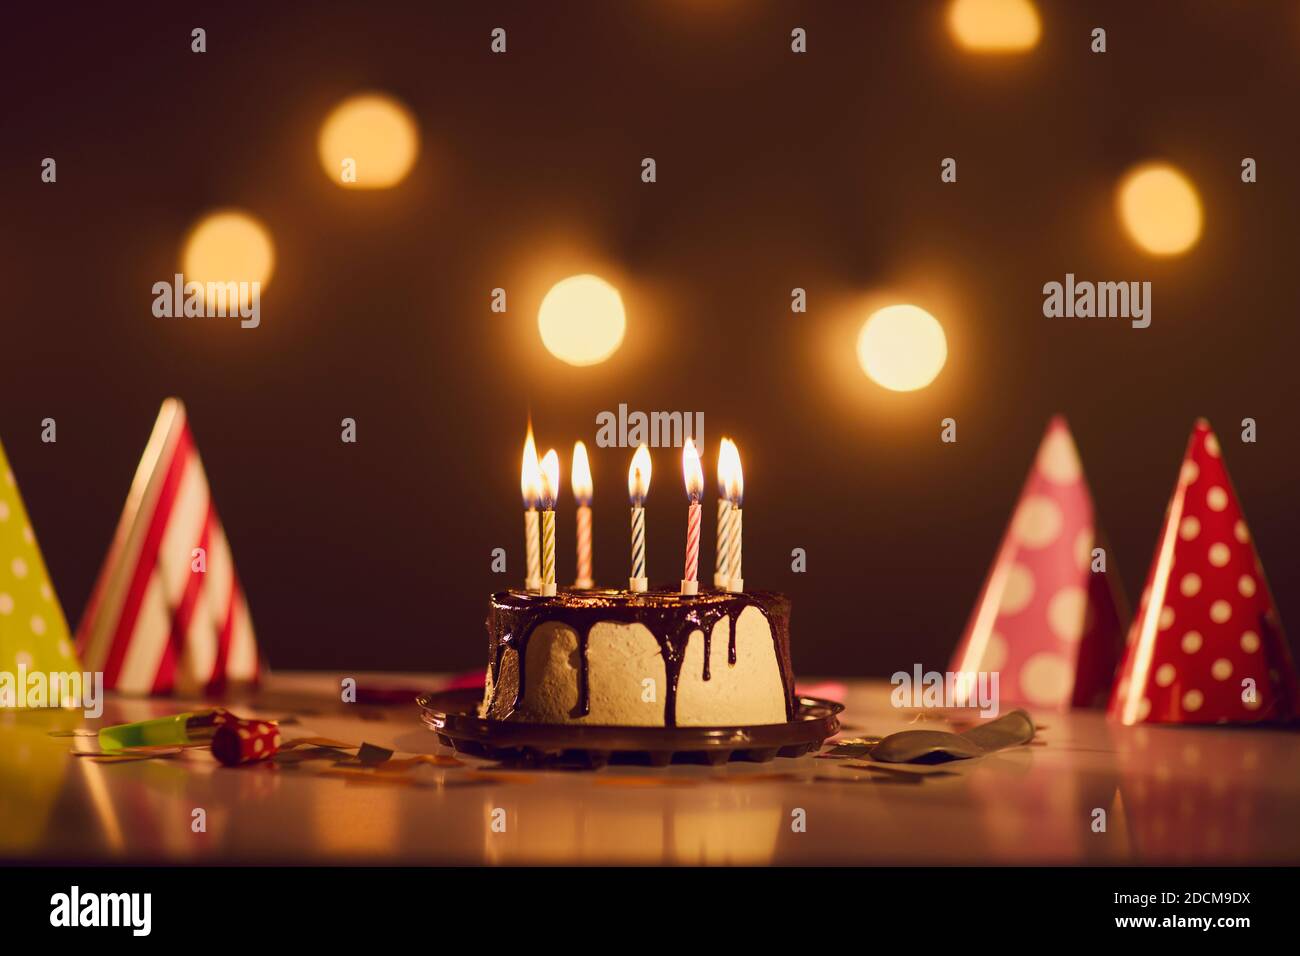 Torta di compleanno con ganache al cioccolato e candele brucianti tavolo con cappelli da festa Foto Stock